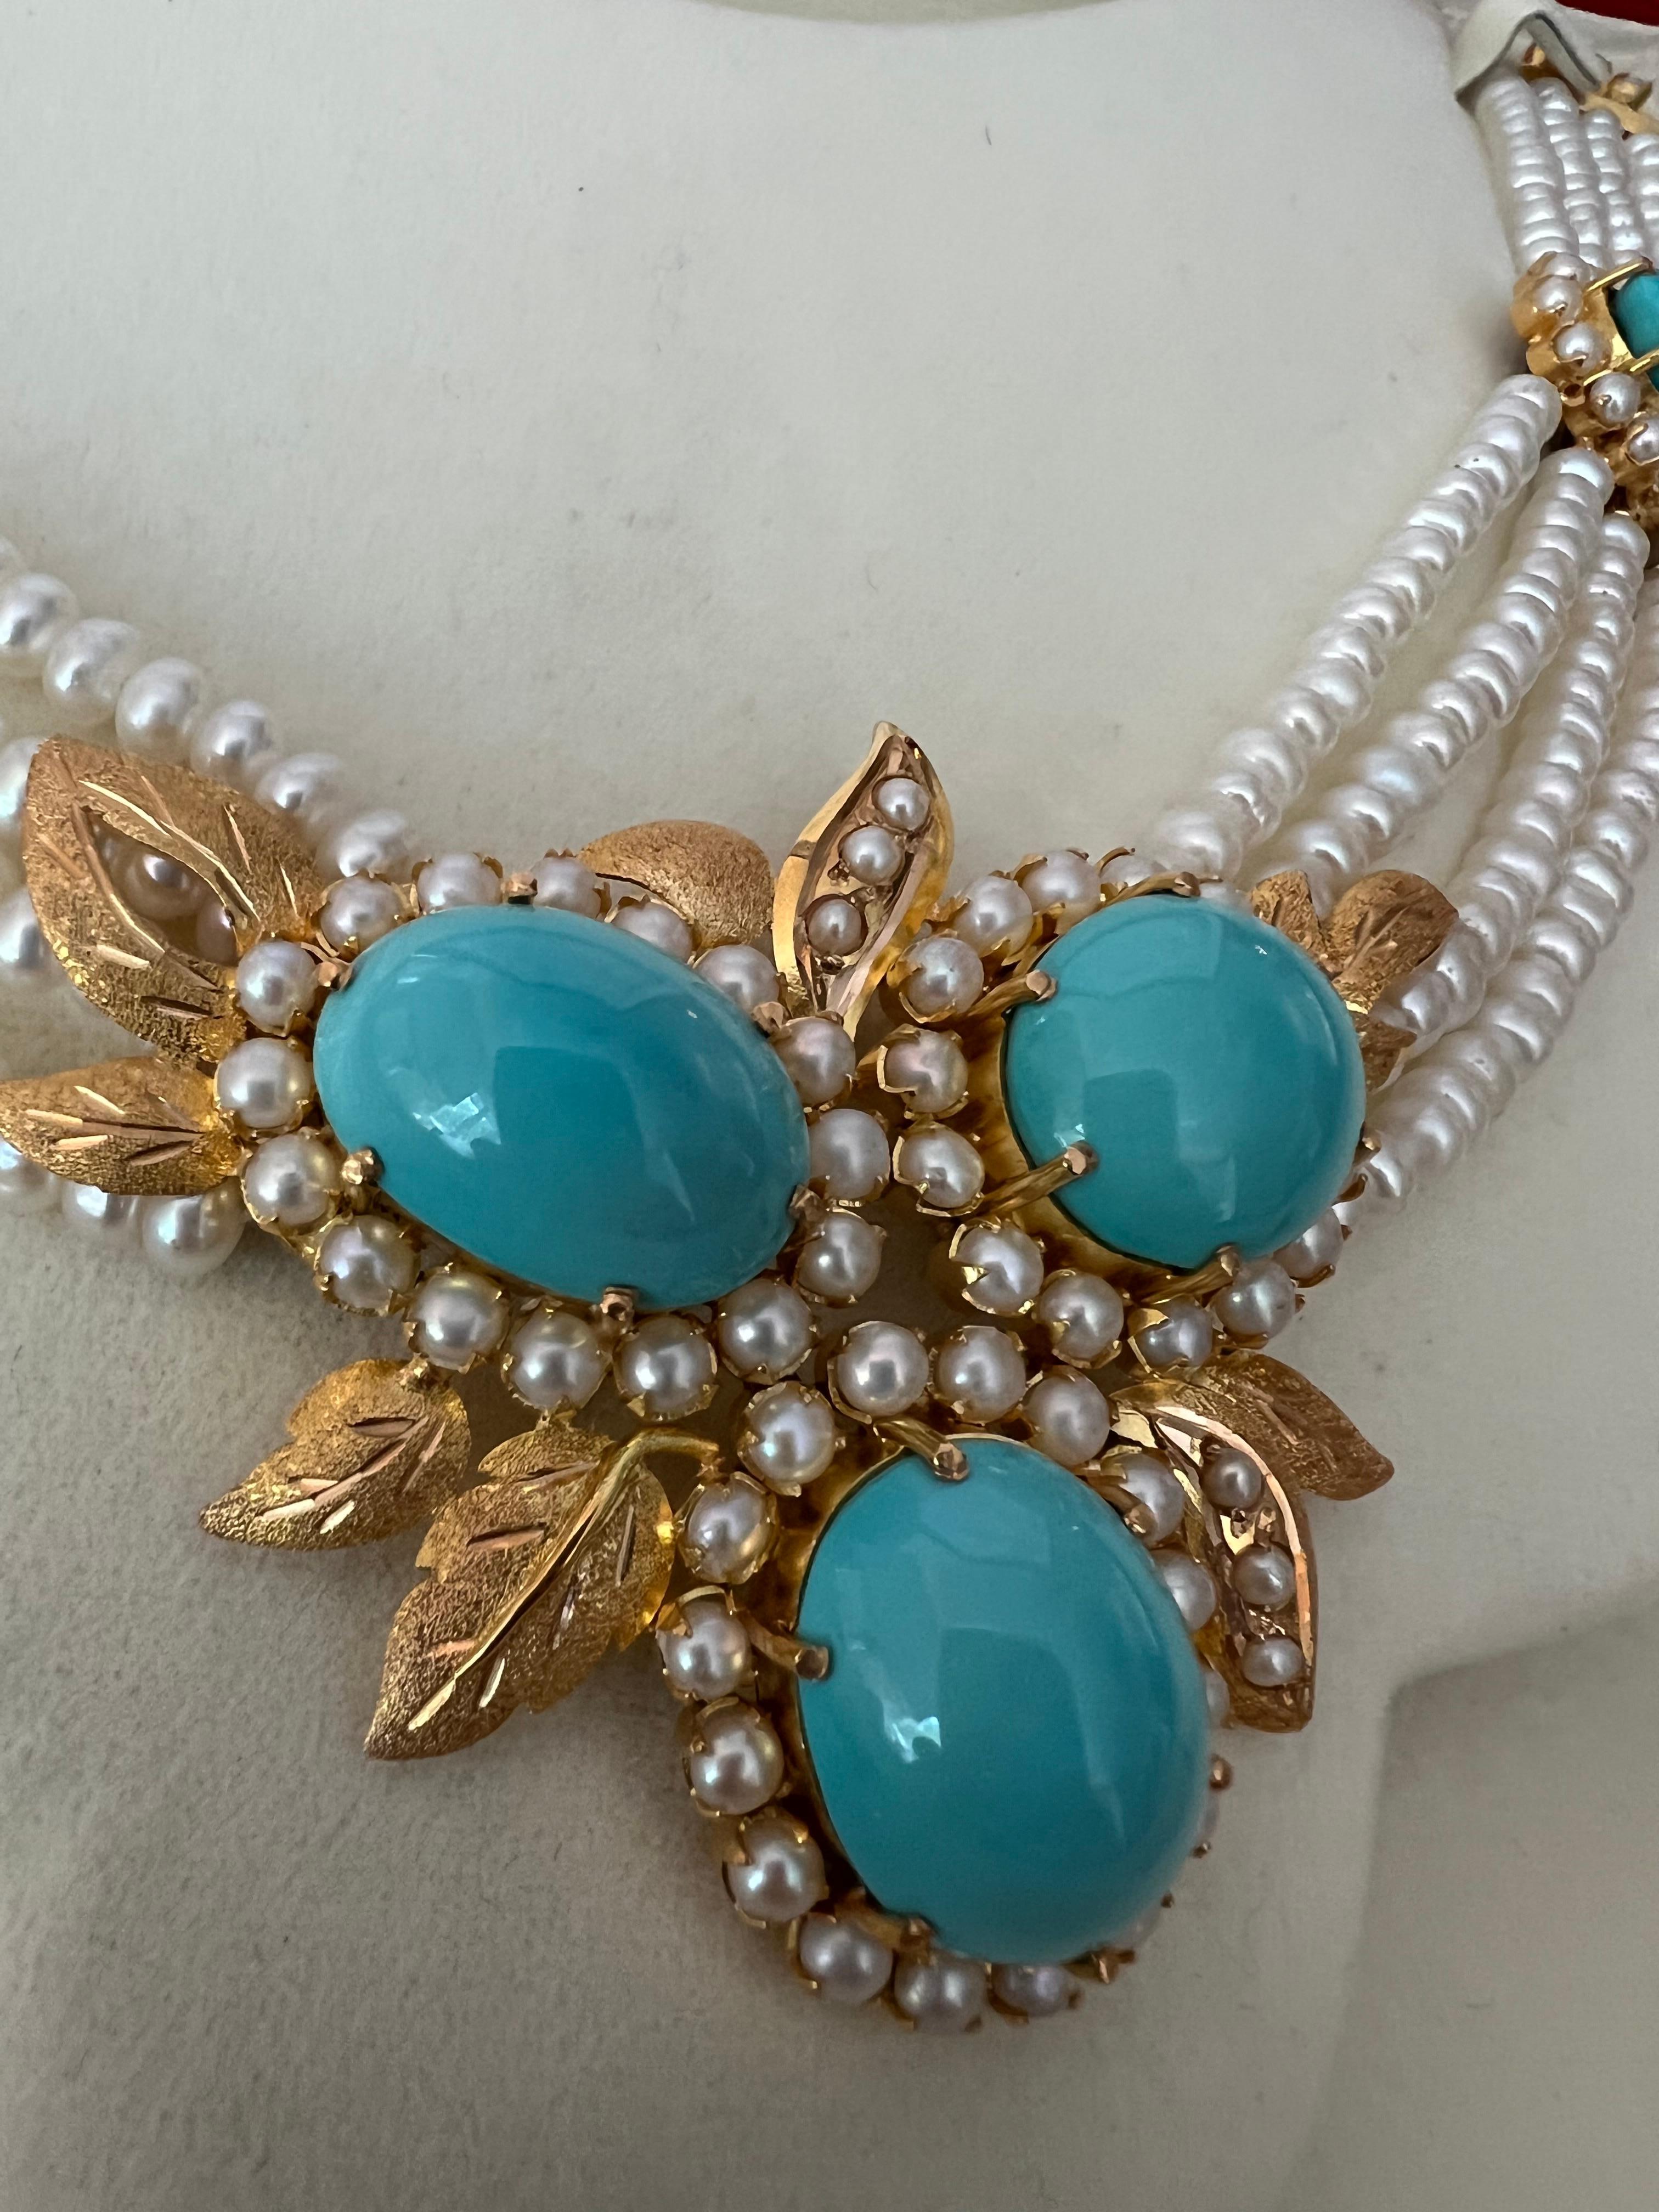 Zum Verkauf steht ein wirklich einzigartiges und fabelhaftes türkisches, türkisfarbenes Perlen- und Gold-Halsketten- und Ohrring-Set.


Die Halskette wiegt insgesamt 75 Gramm und besteht aus über 260 Süßwasserperlen und fünf großen Türkiscabochons,